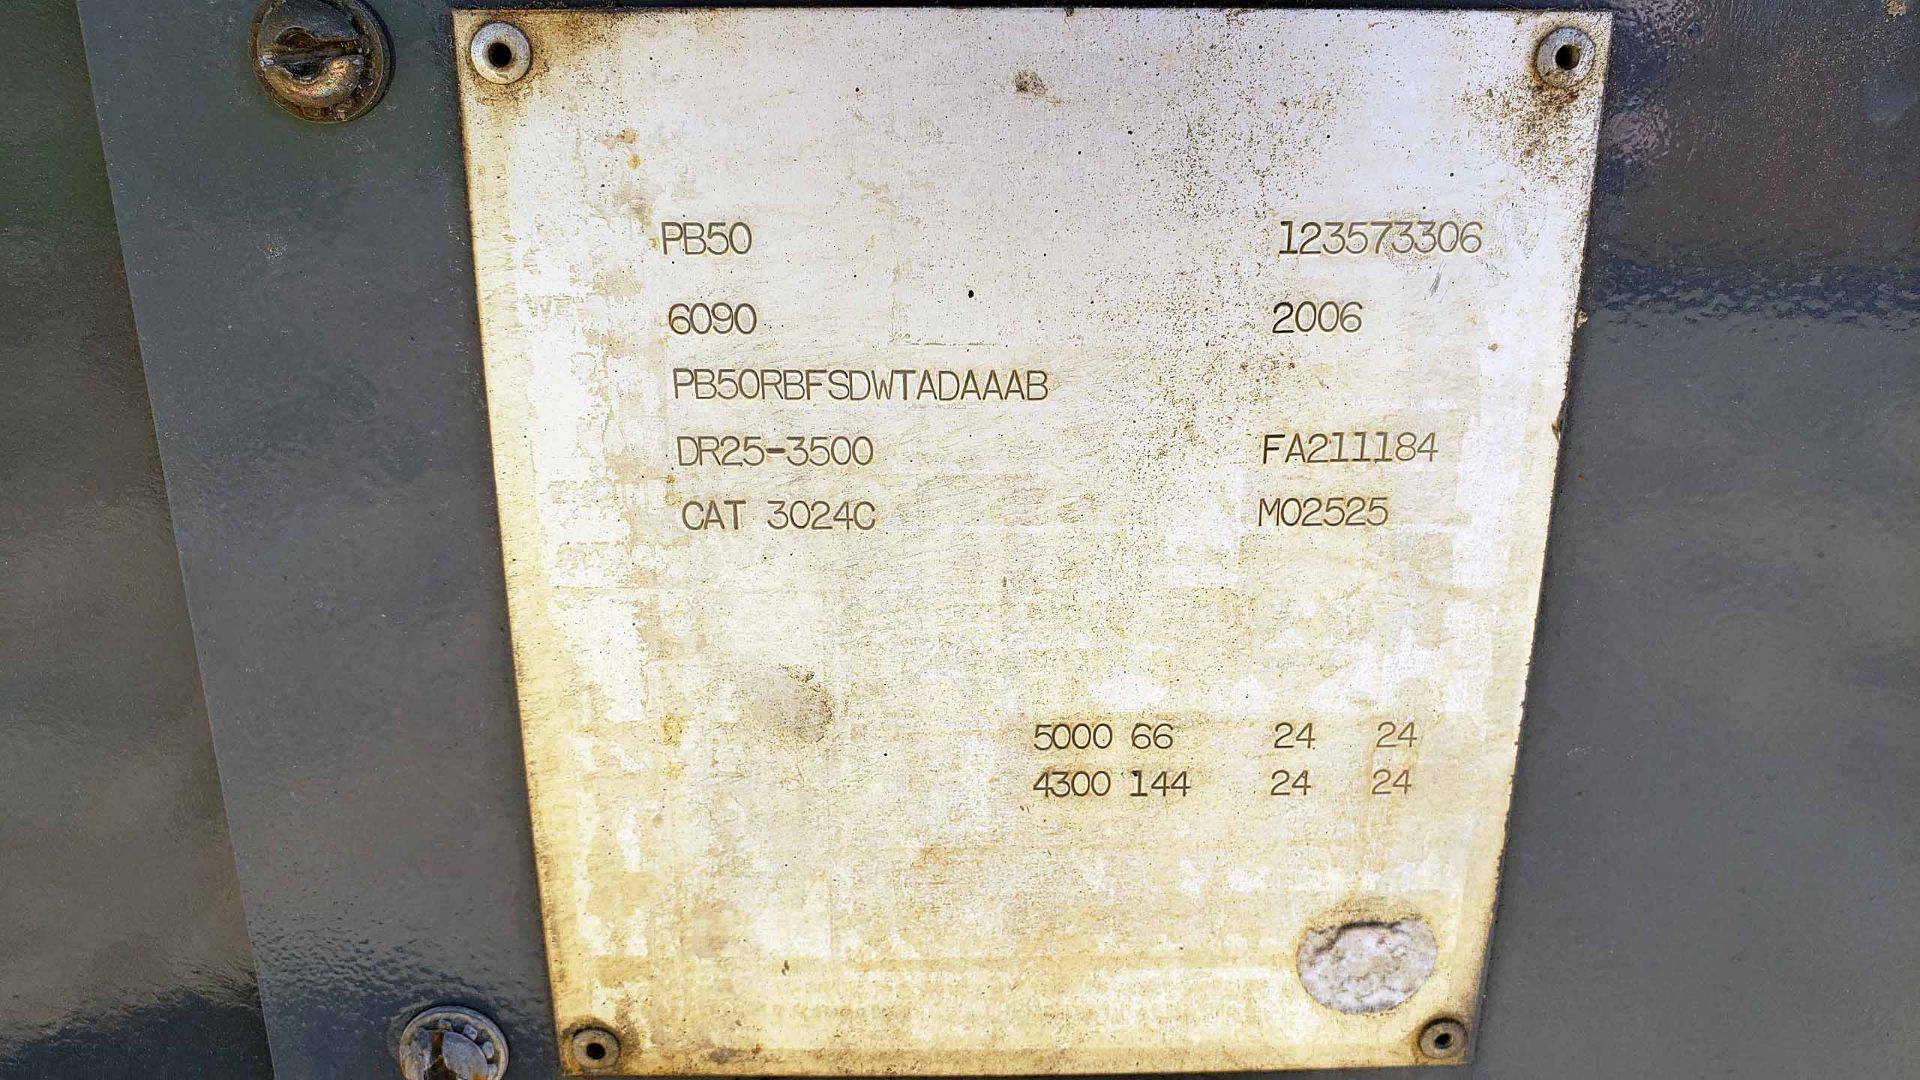 DIESEL FORKLIFT, PRINCETON 5,000-LB. BASE CAP. MDL. PB50, Cat 3024 diesel engine, 103” 2-stage mast, - Image 11 of 11